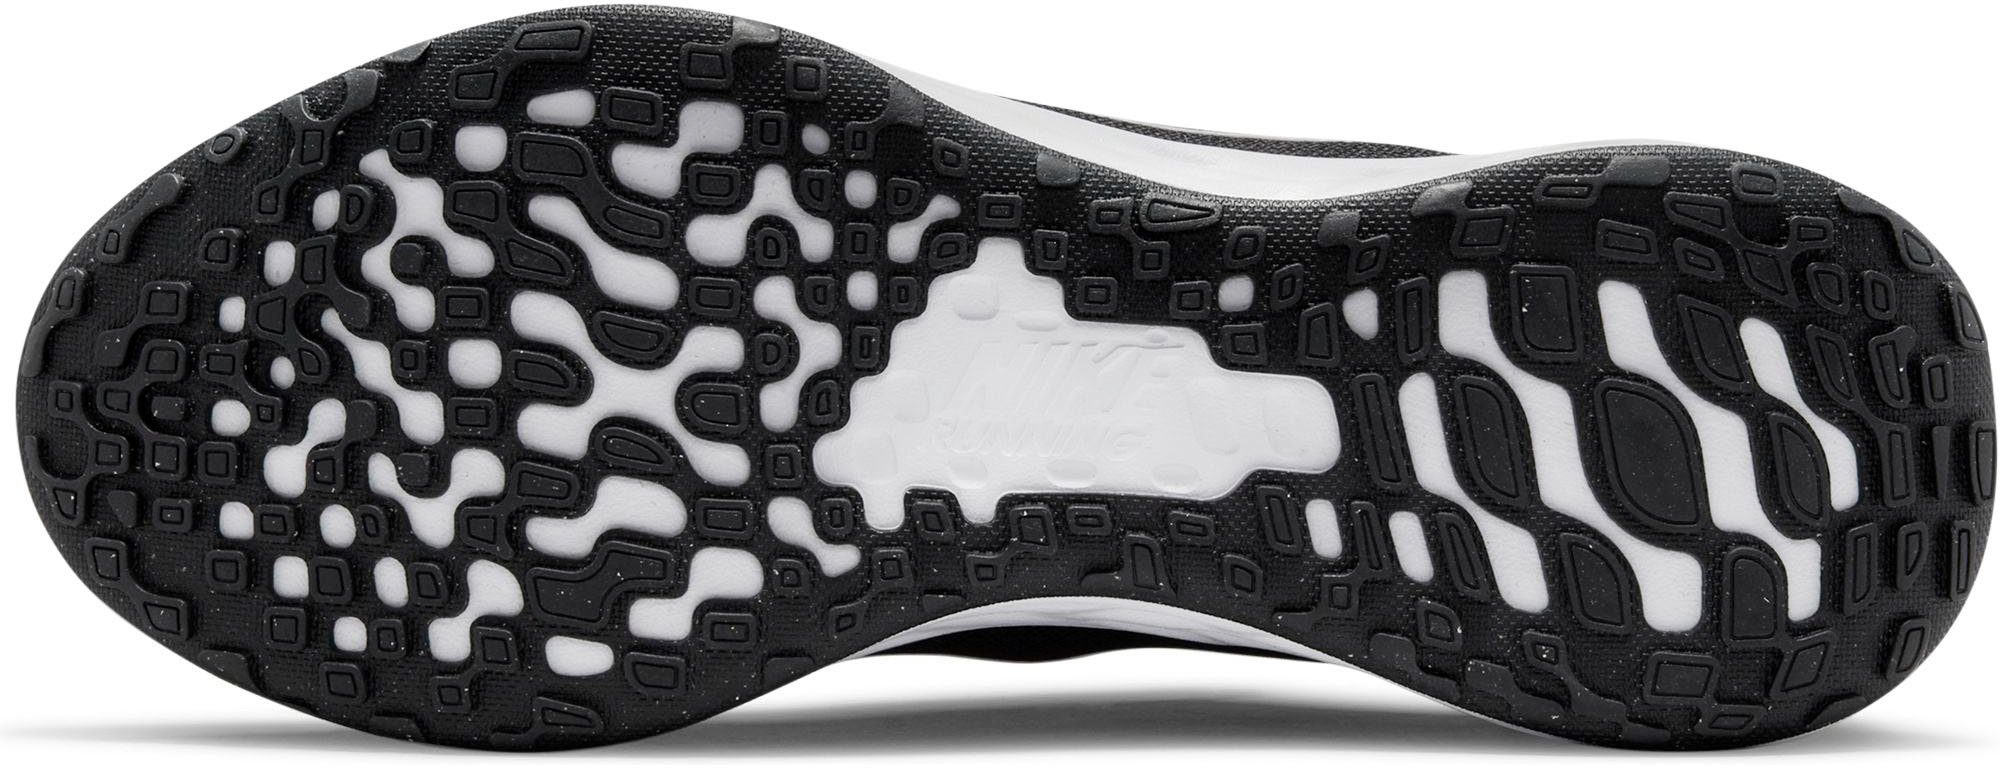 6 Laufschuh REVOLUTION NEXT NATURE schwarz-weiß Nike